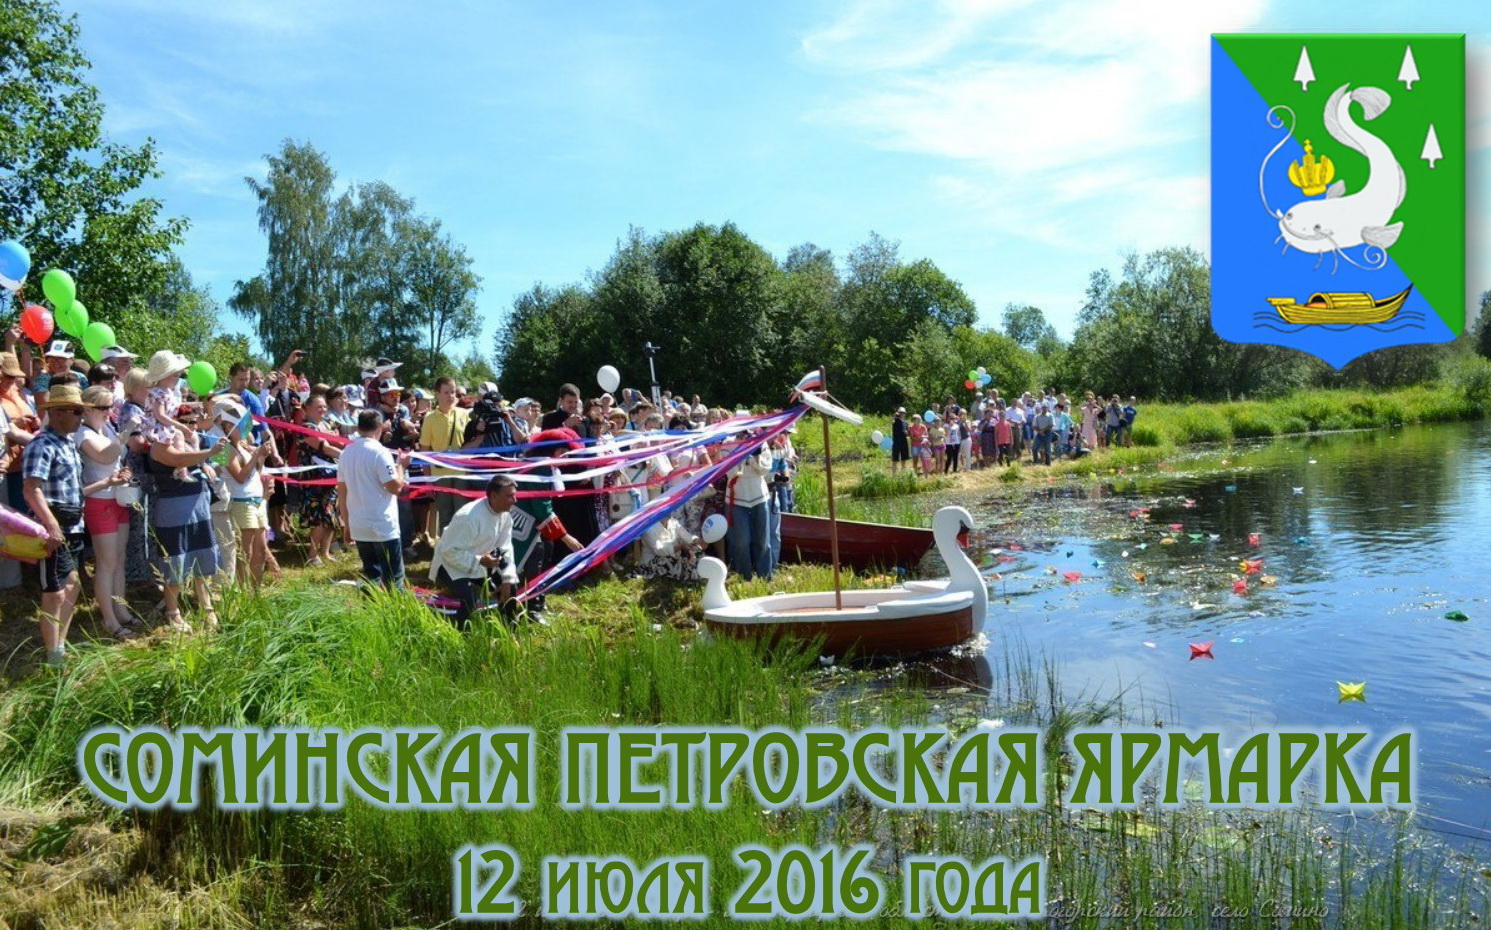 Идет подготовка IV Соминской Петровской ярмарки 2016 года.